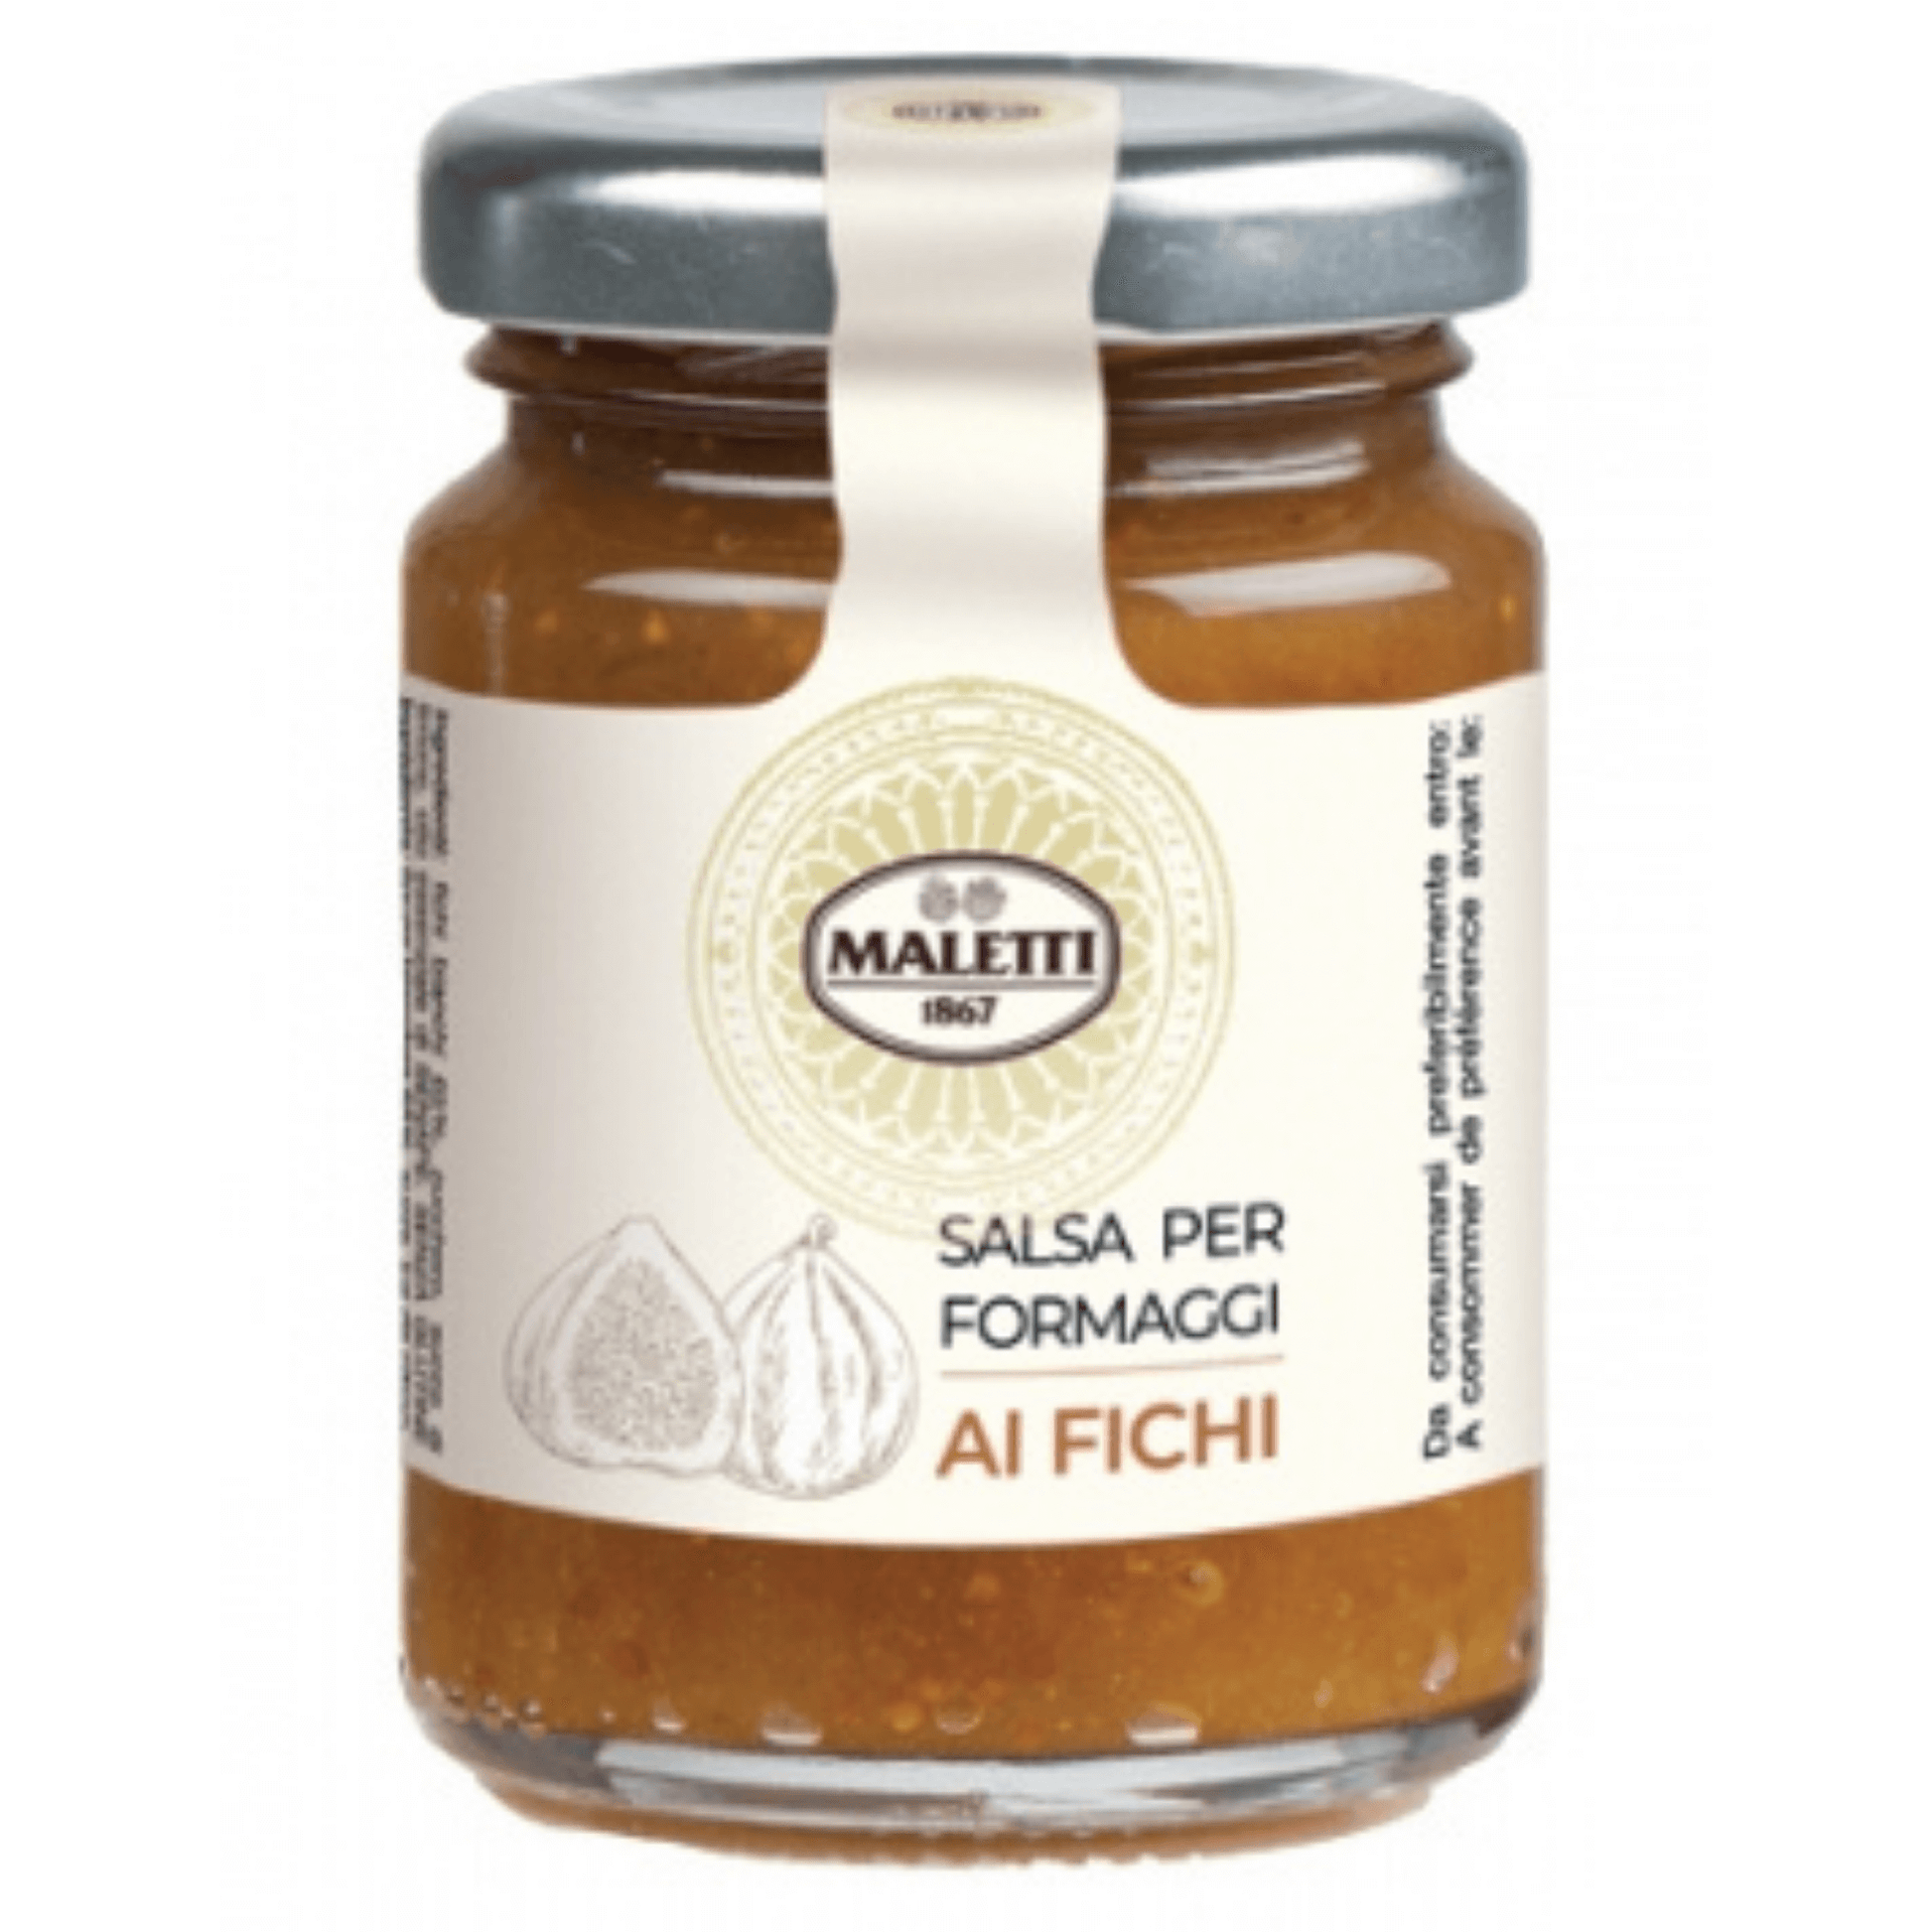 Salsa per formaggi ai fichi Maletti 110 g